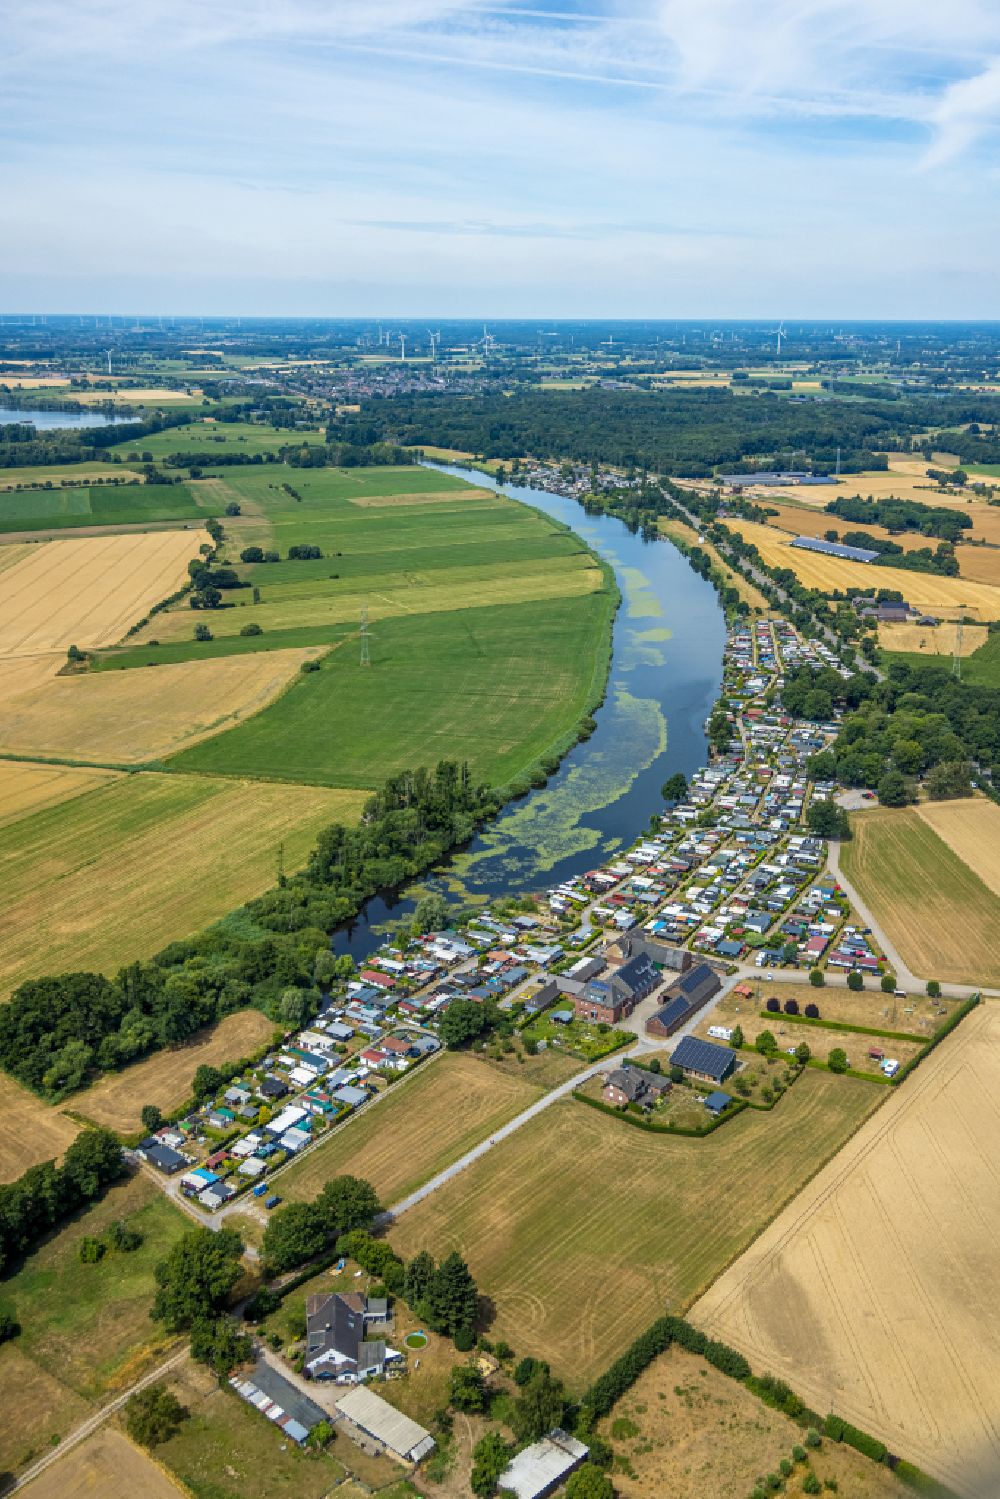 Luftbild Hamminkeln - Campingplatz mit Wohnwagen und Zelten am Hagener Meer in Hamminkeln im Bundesland Nordrhein-Westfalen, Deutschland